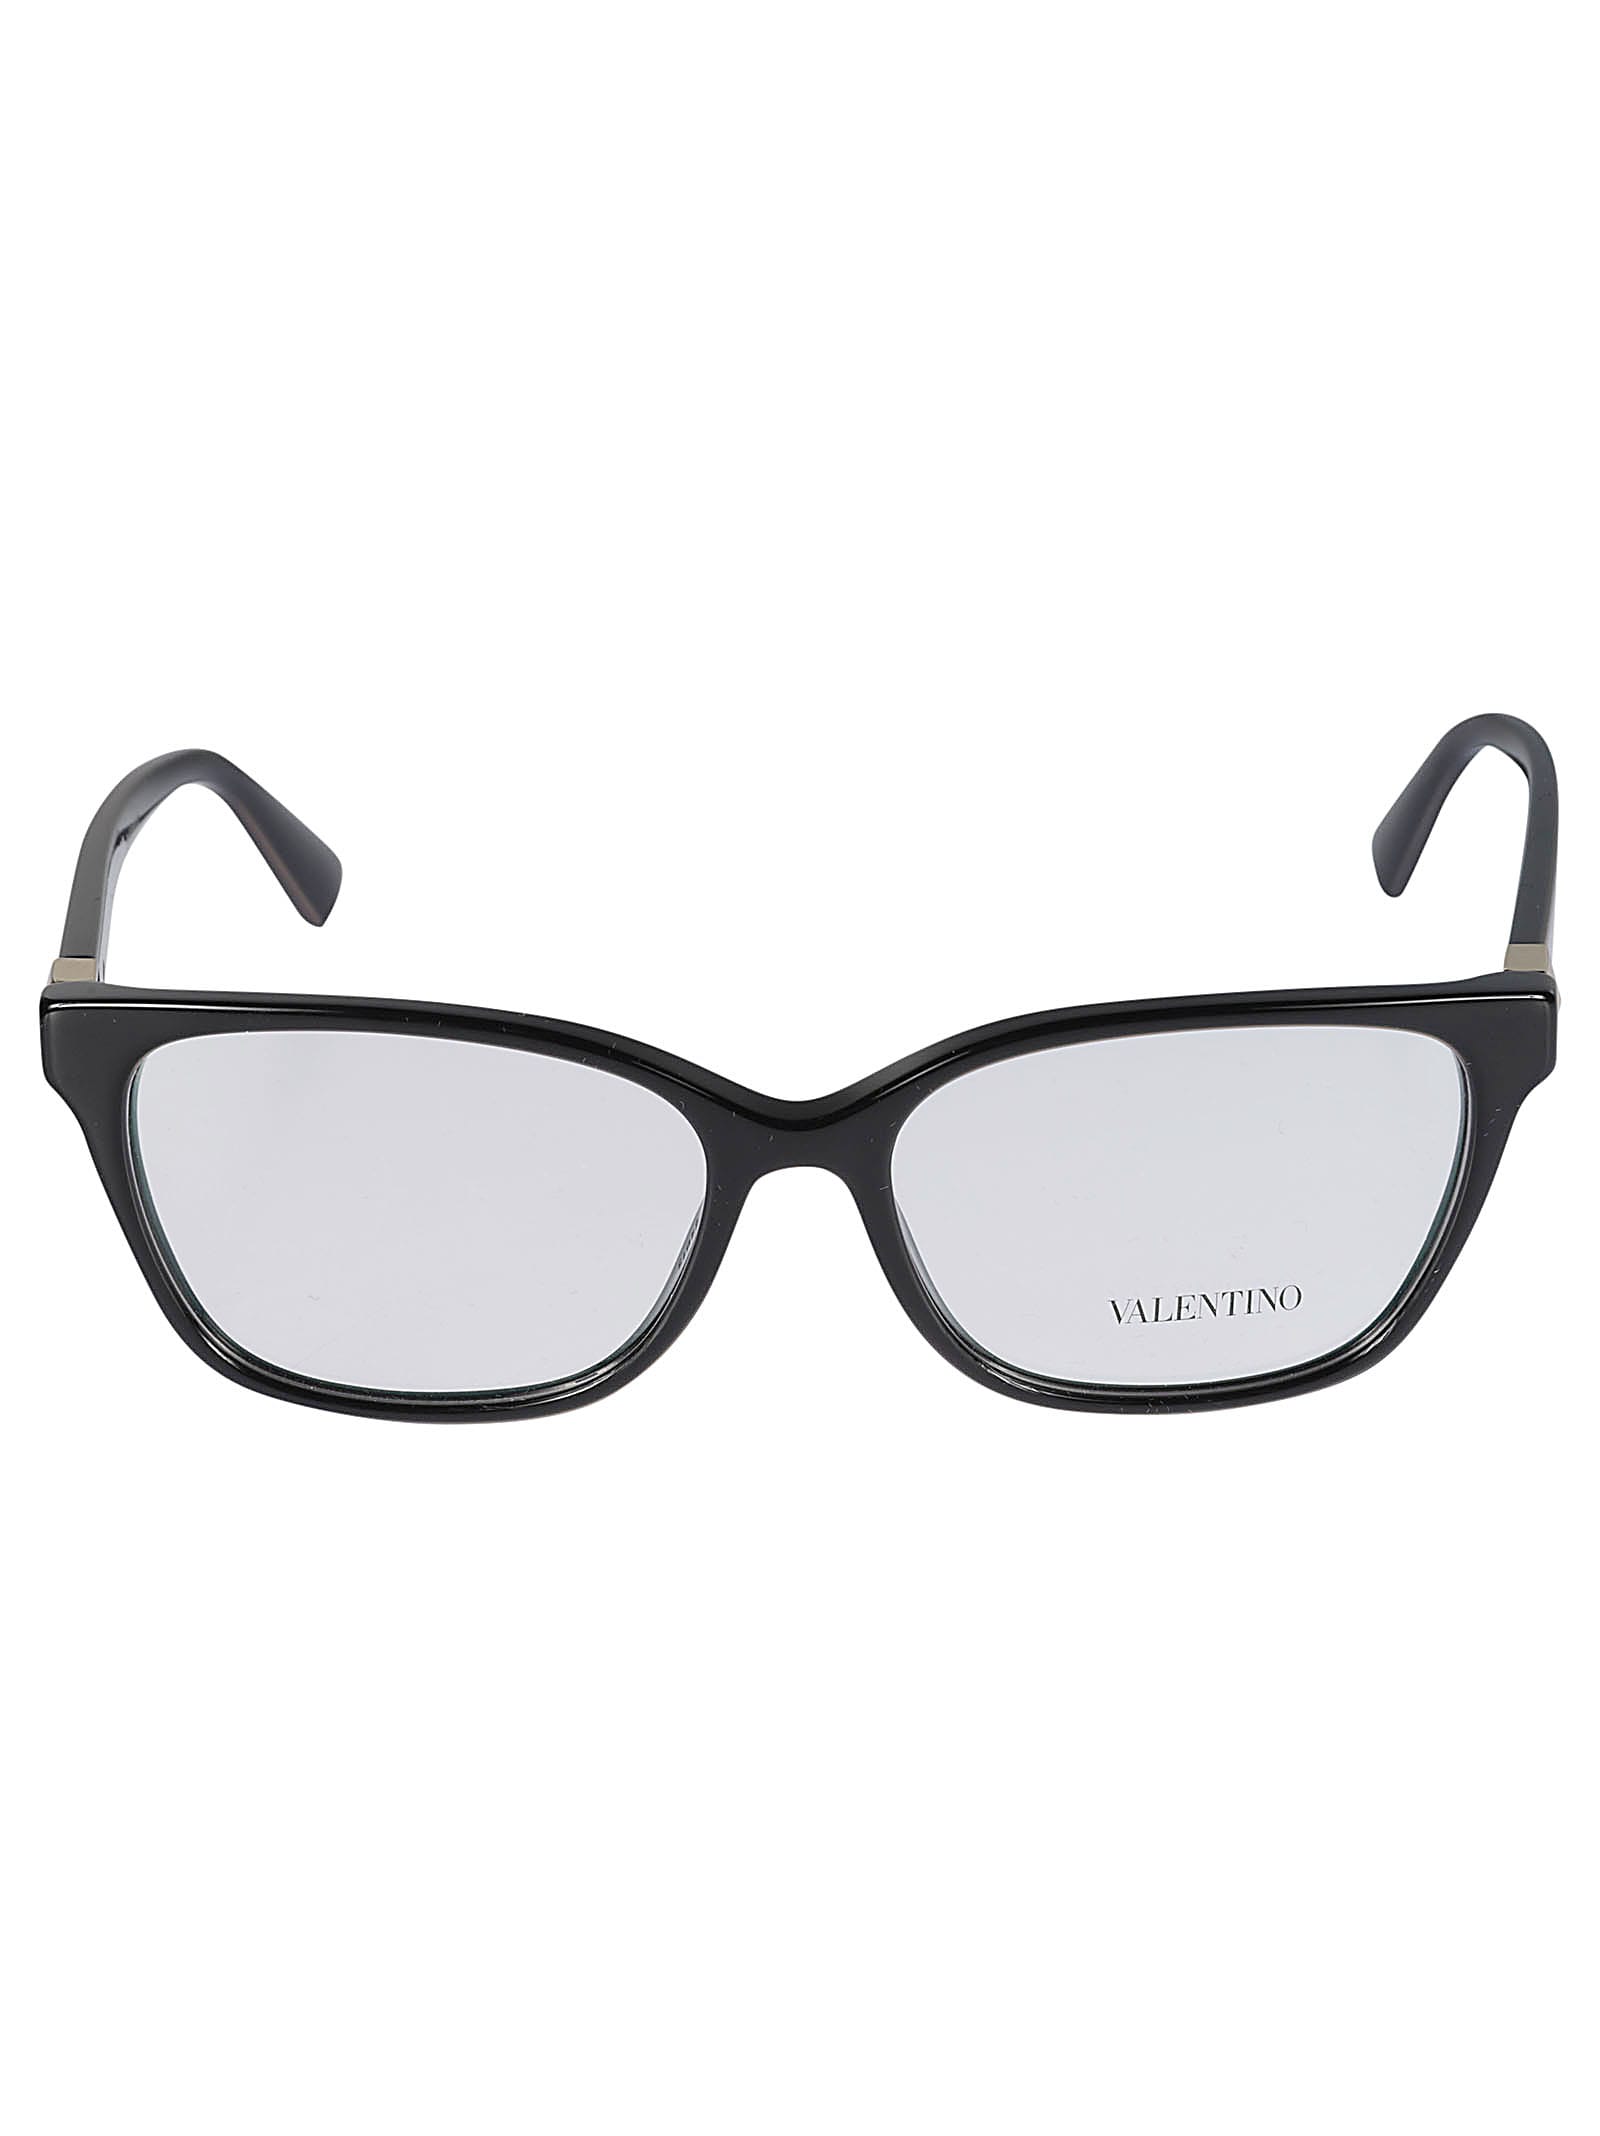 Valentino Vista5001 Glasses